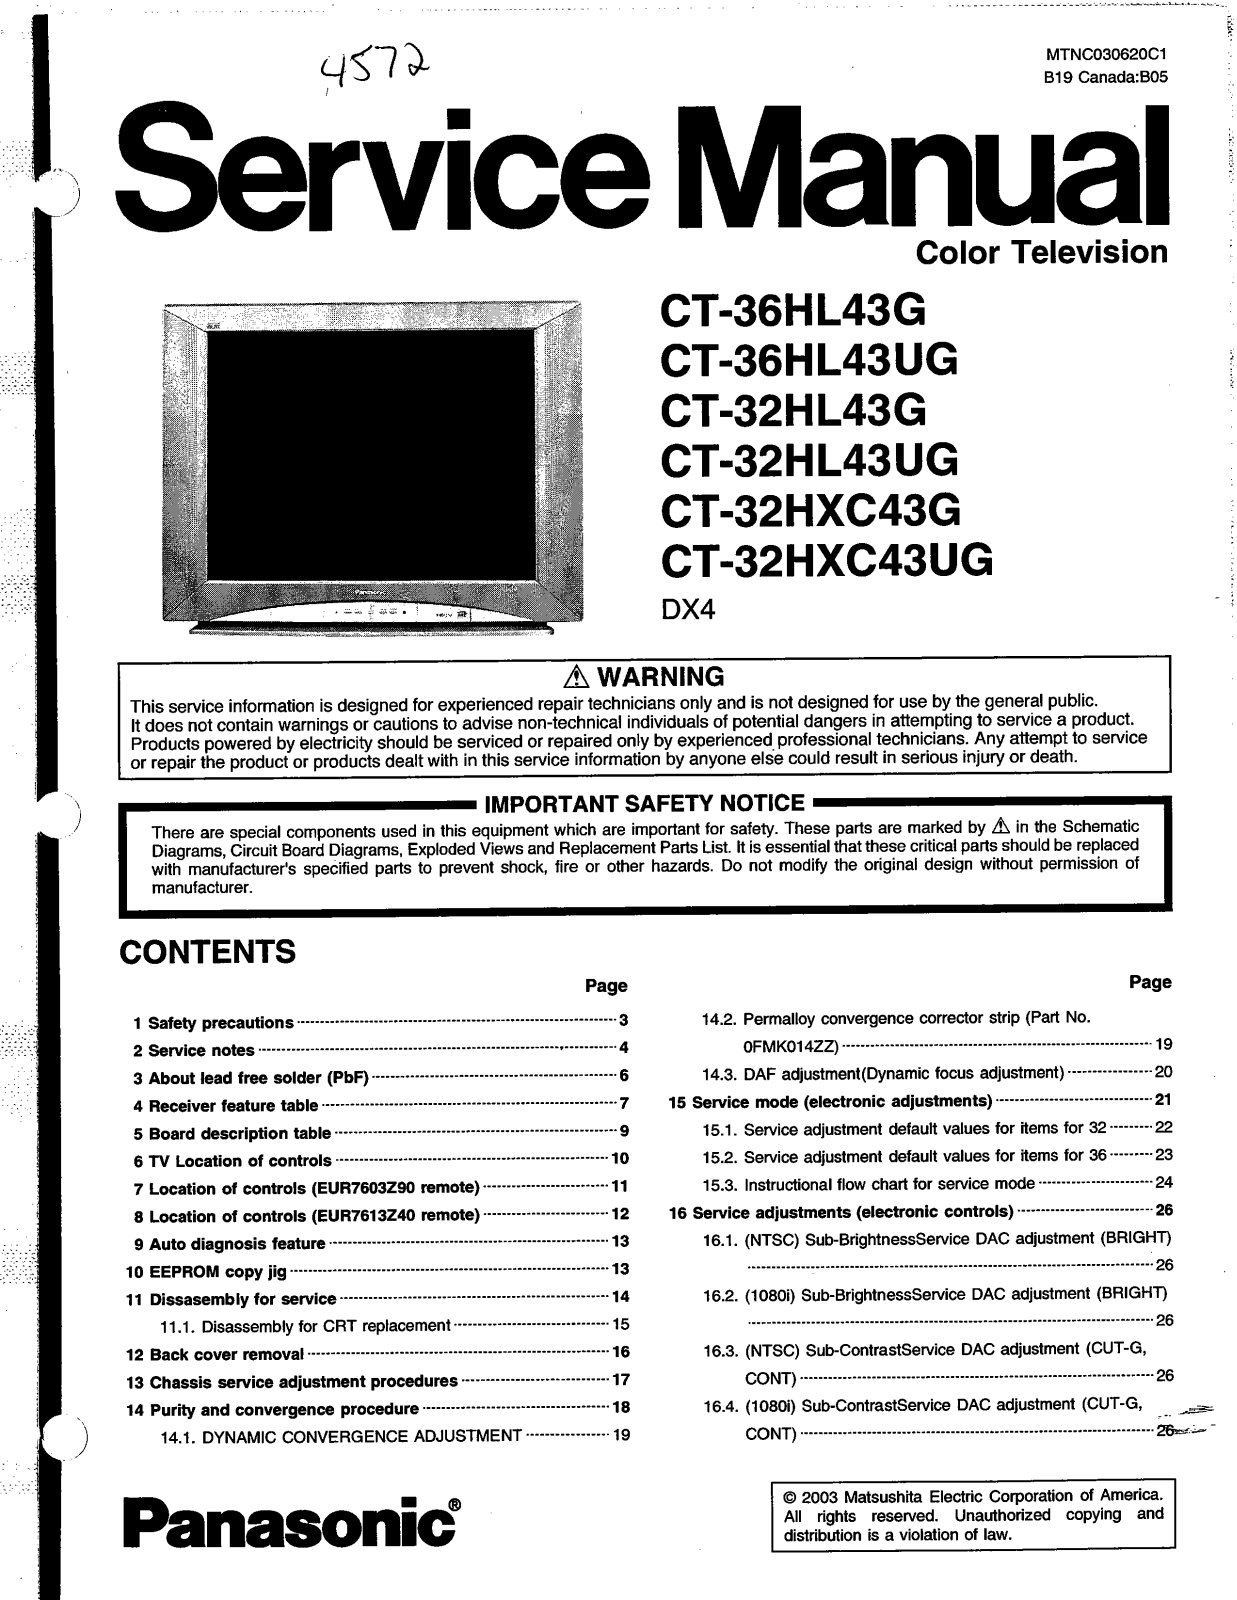 Panasonic CT-36HL43, CT-32HL43, CT-32HXC43 Schematic